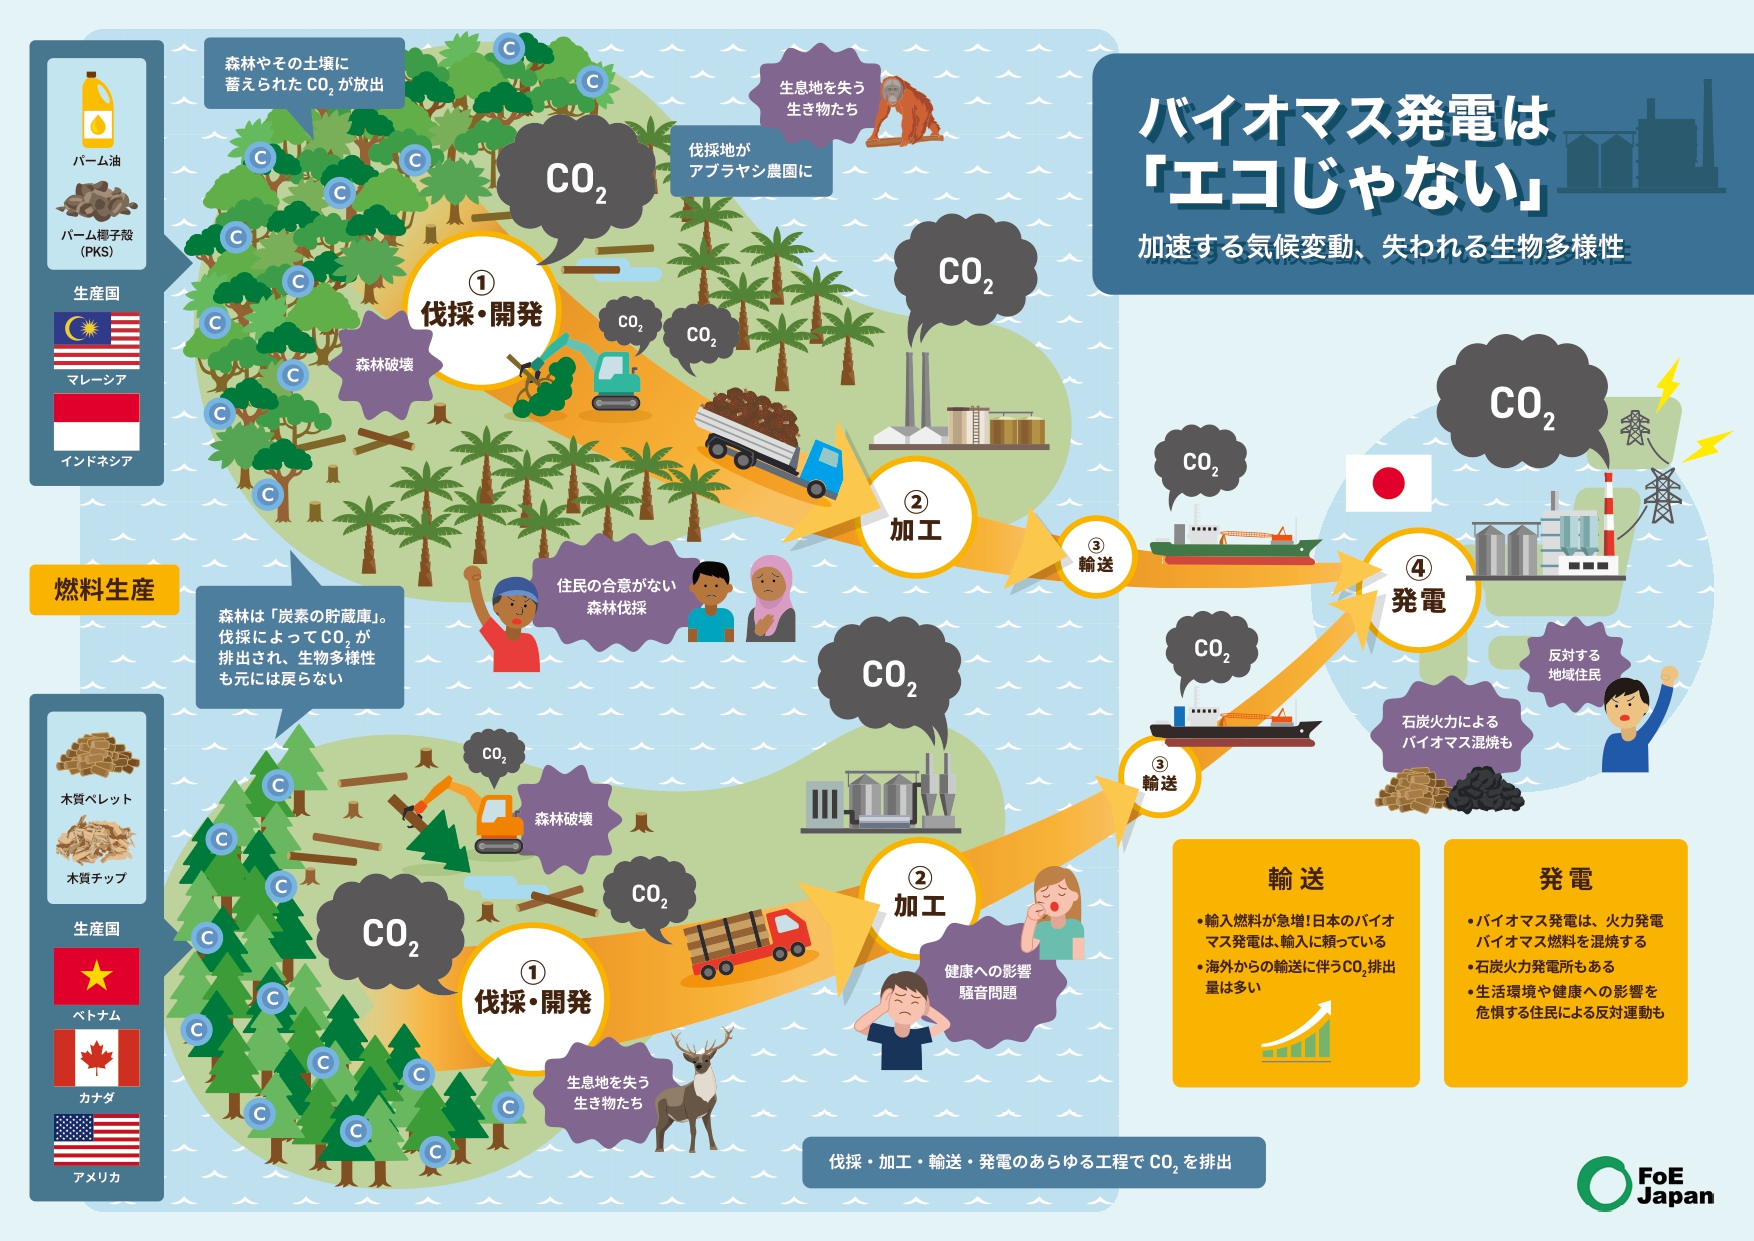 国際環境NGO FoE Japan